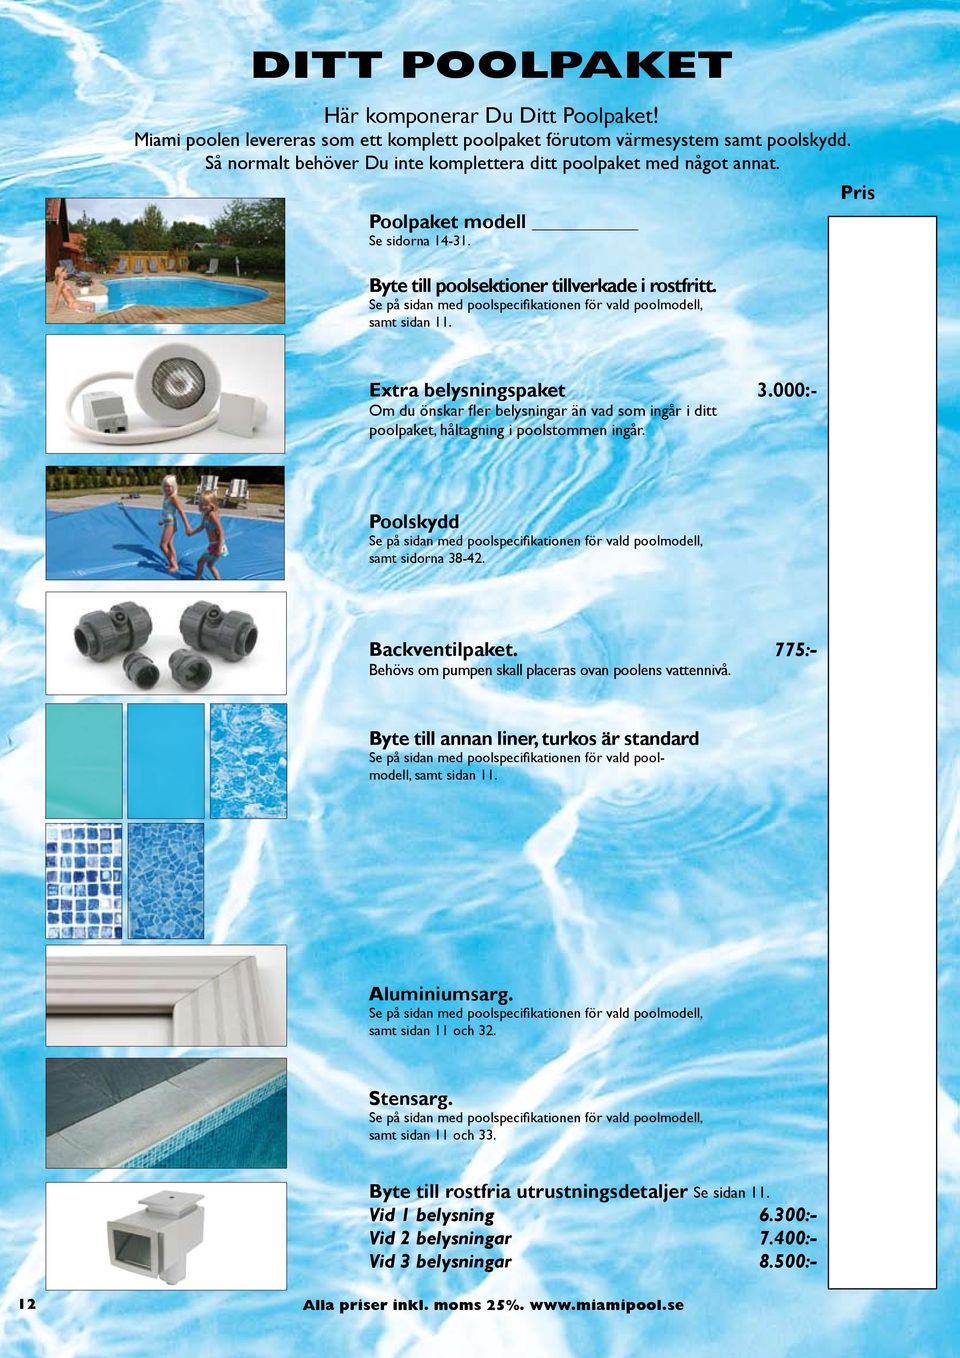 Se på sidan med poolspecifikationen för vald poolmodell, samt sidan 11. Pris Extra belysningspaket 3.